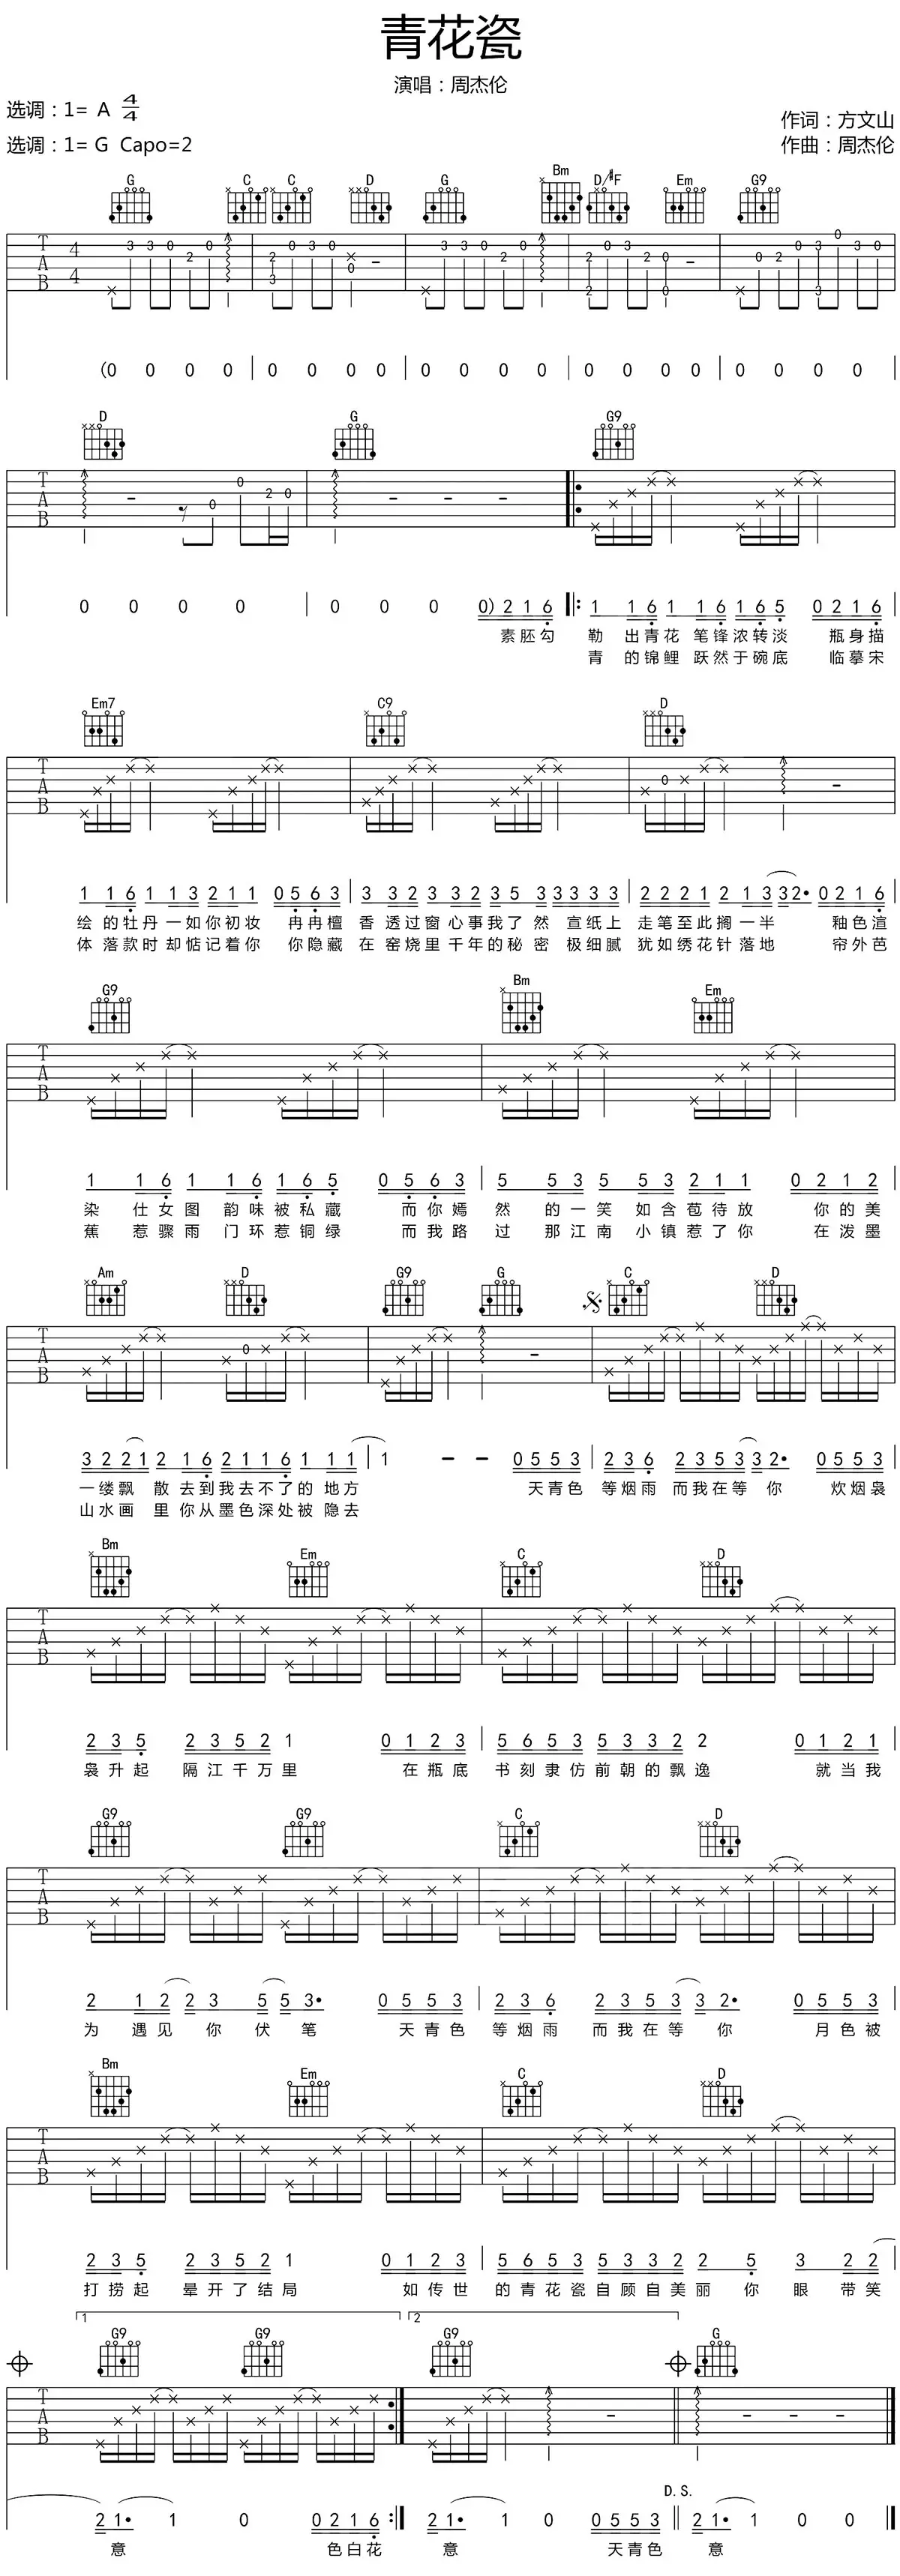 3、青花瓷吉他谱简单版:哪位有 周杰伦的青花瓷吉他谱 要C调的！！ 重点是C调！